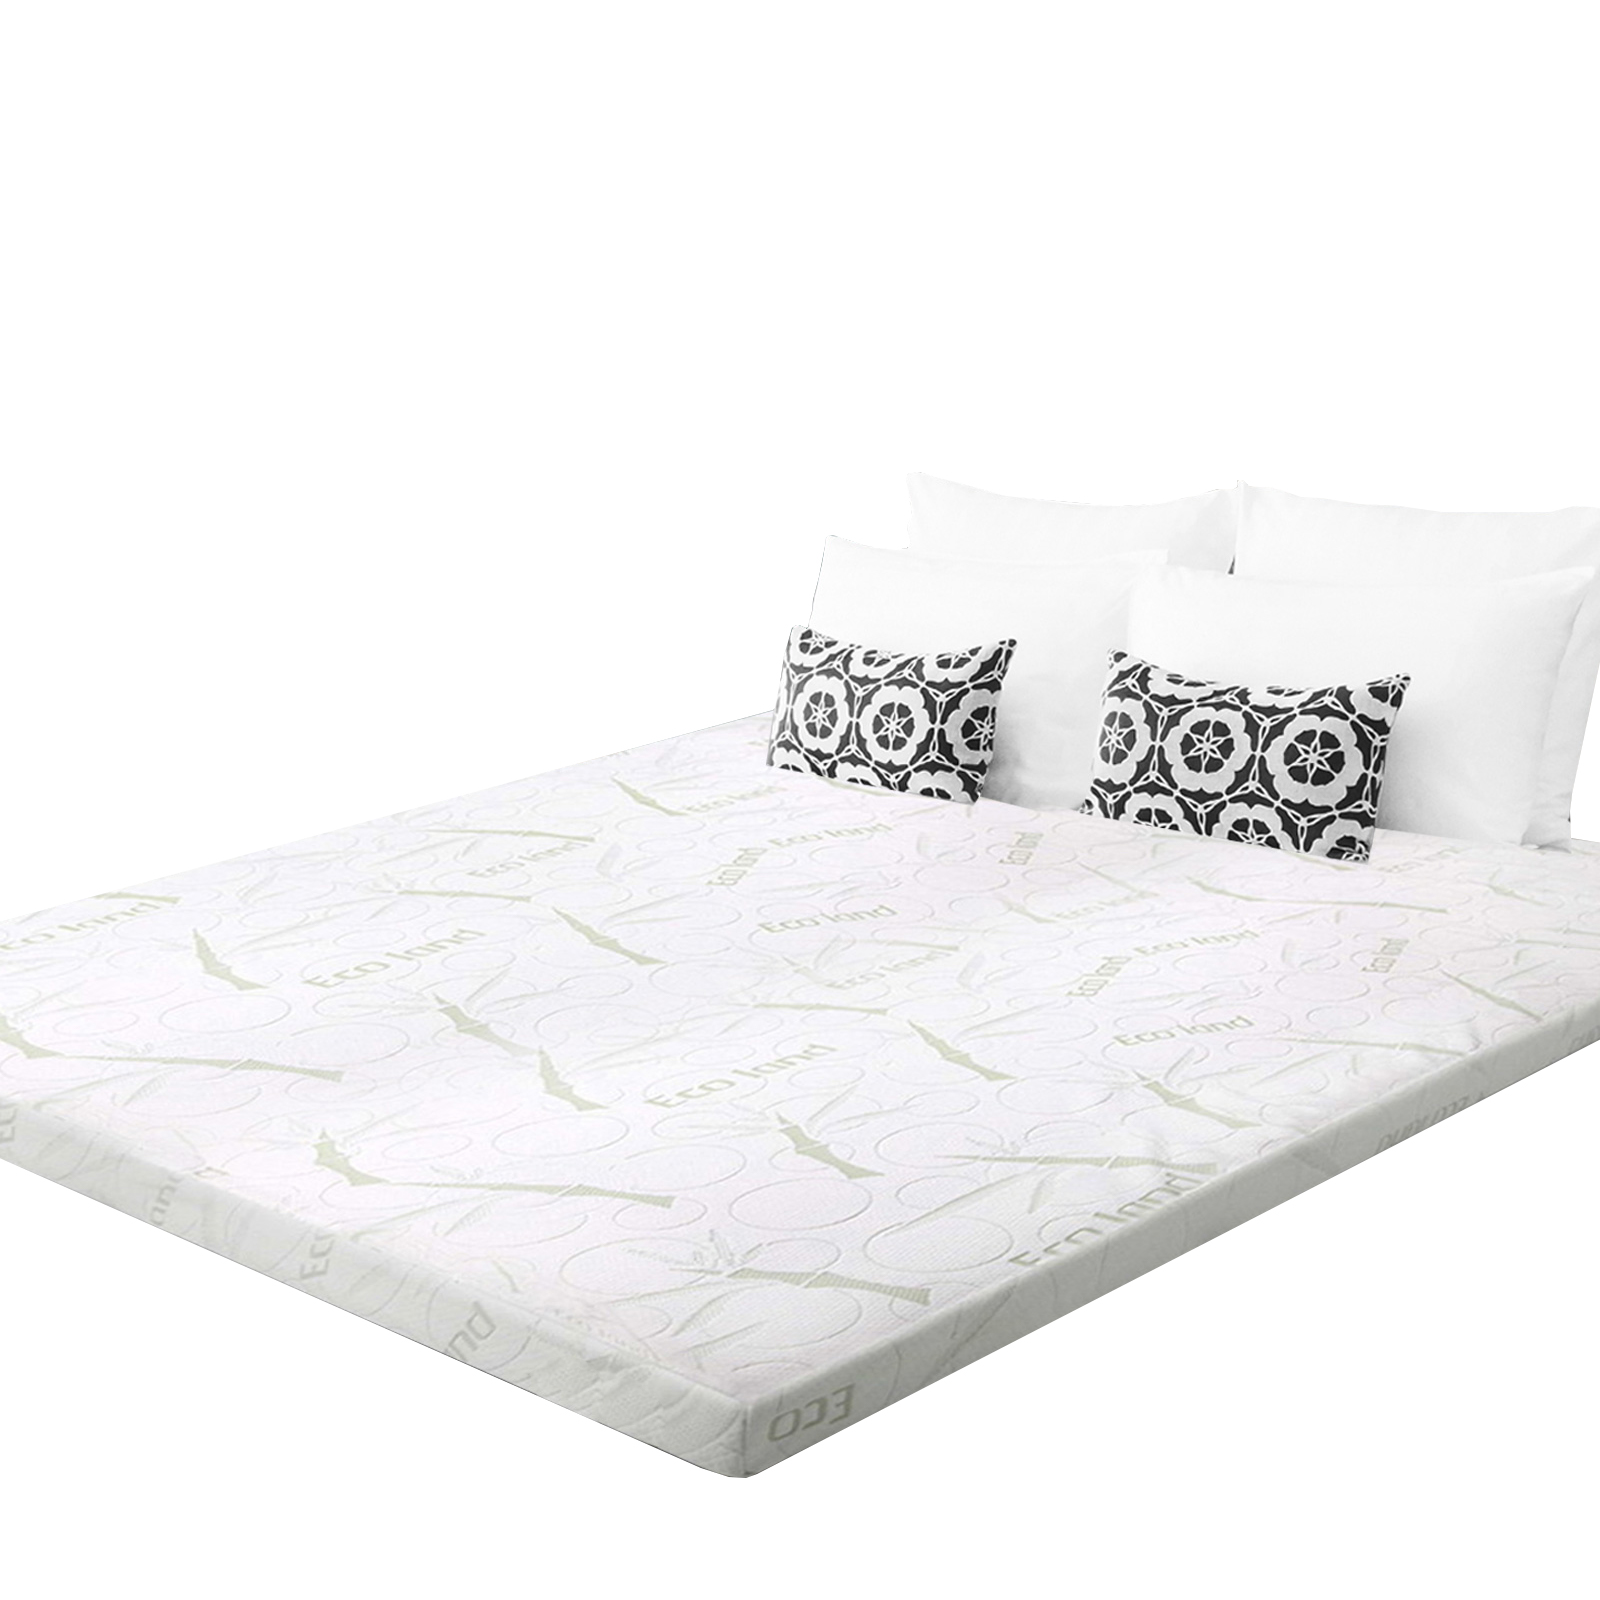  Queen Bed Memory Foam Mattress Topper Cool Gel Bamboo Cover 10CM High Density